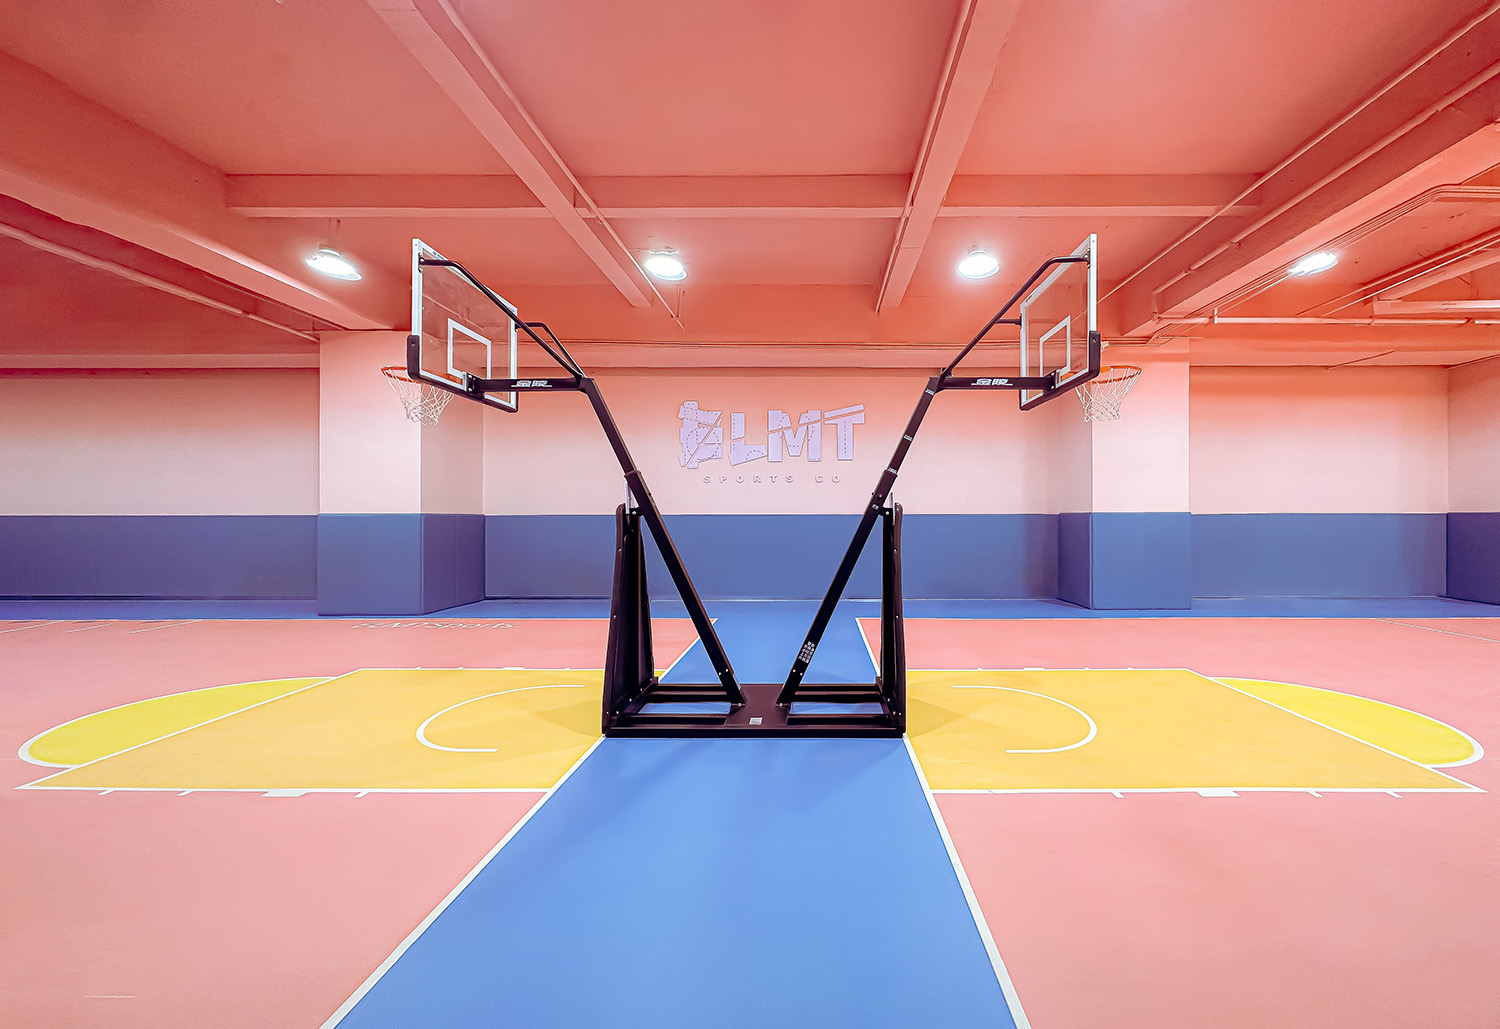 室內運動空間,籃球場設計,籃球館設計,室內籃球場設計,運動空間設計,昆明元素體育海樂世界3.0,昆明,平介設計,楊楠